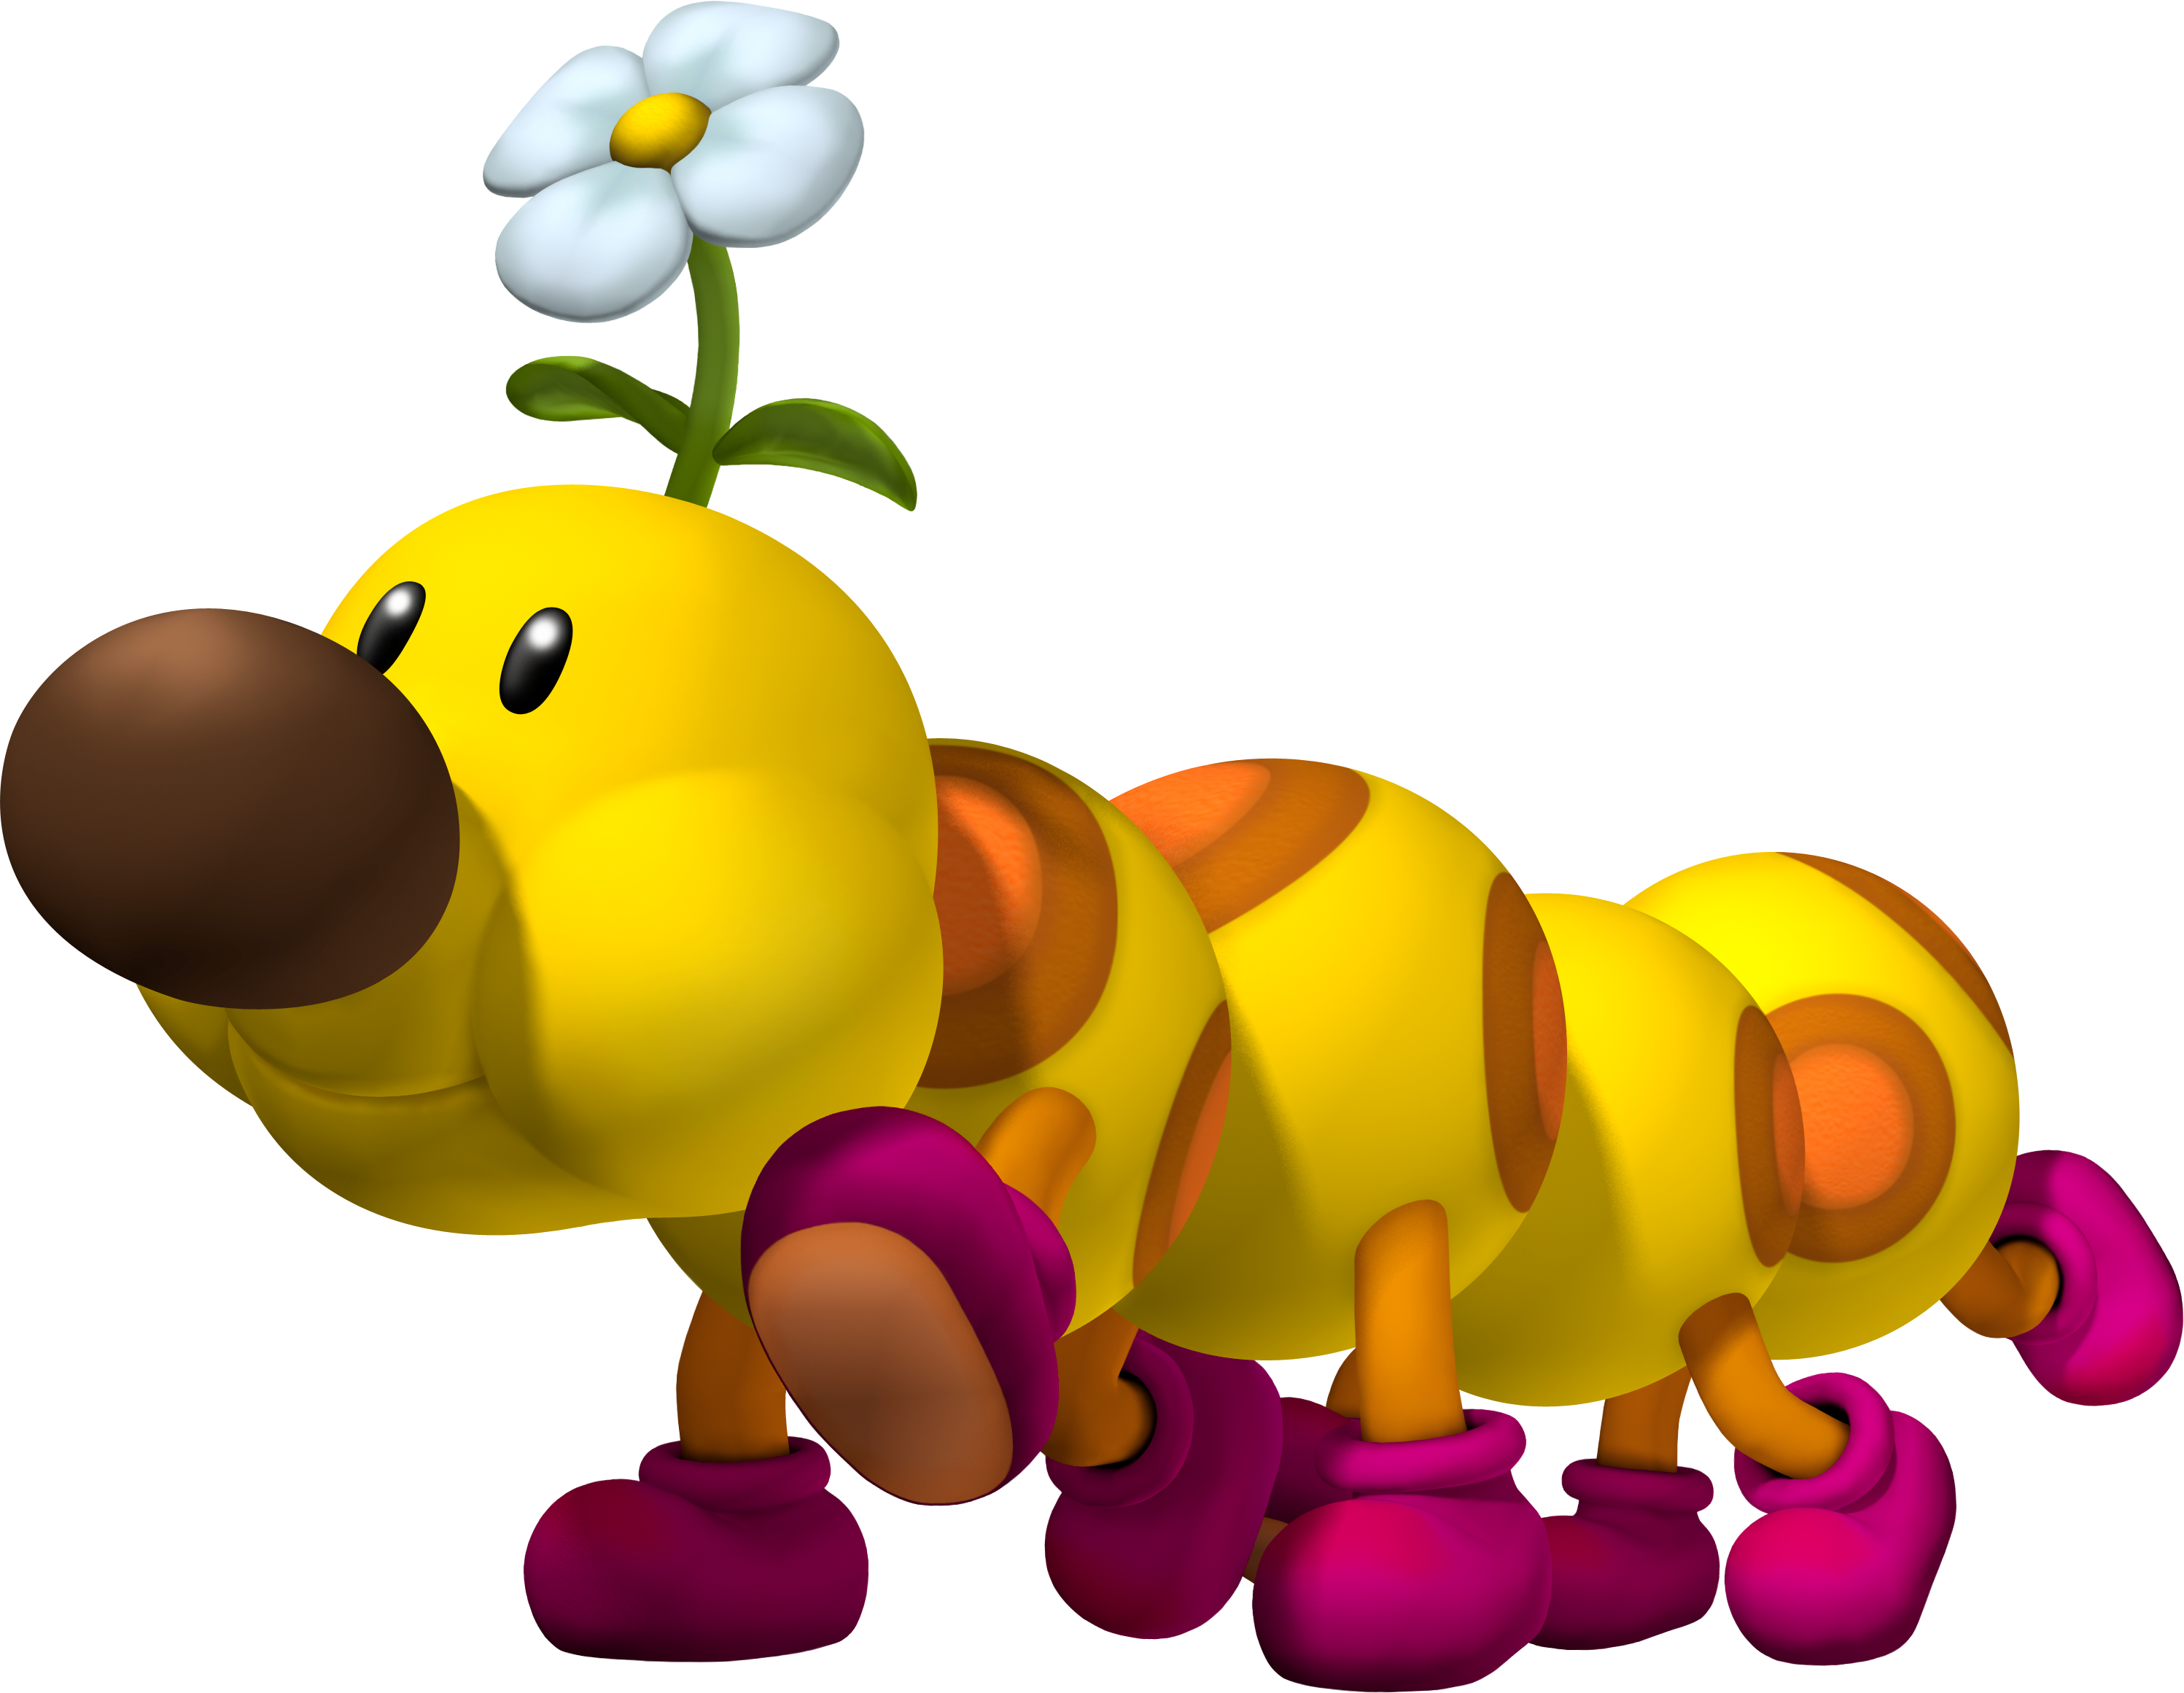 Banana Bunch - Super Mario Wiki, the Mario encyclopedia